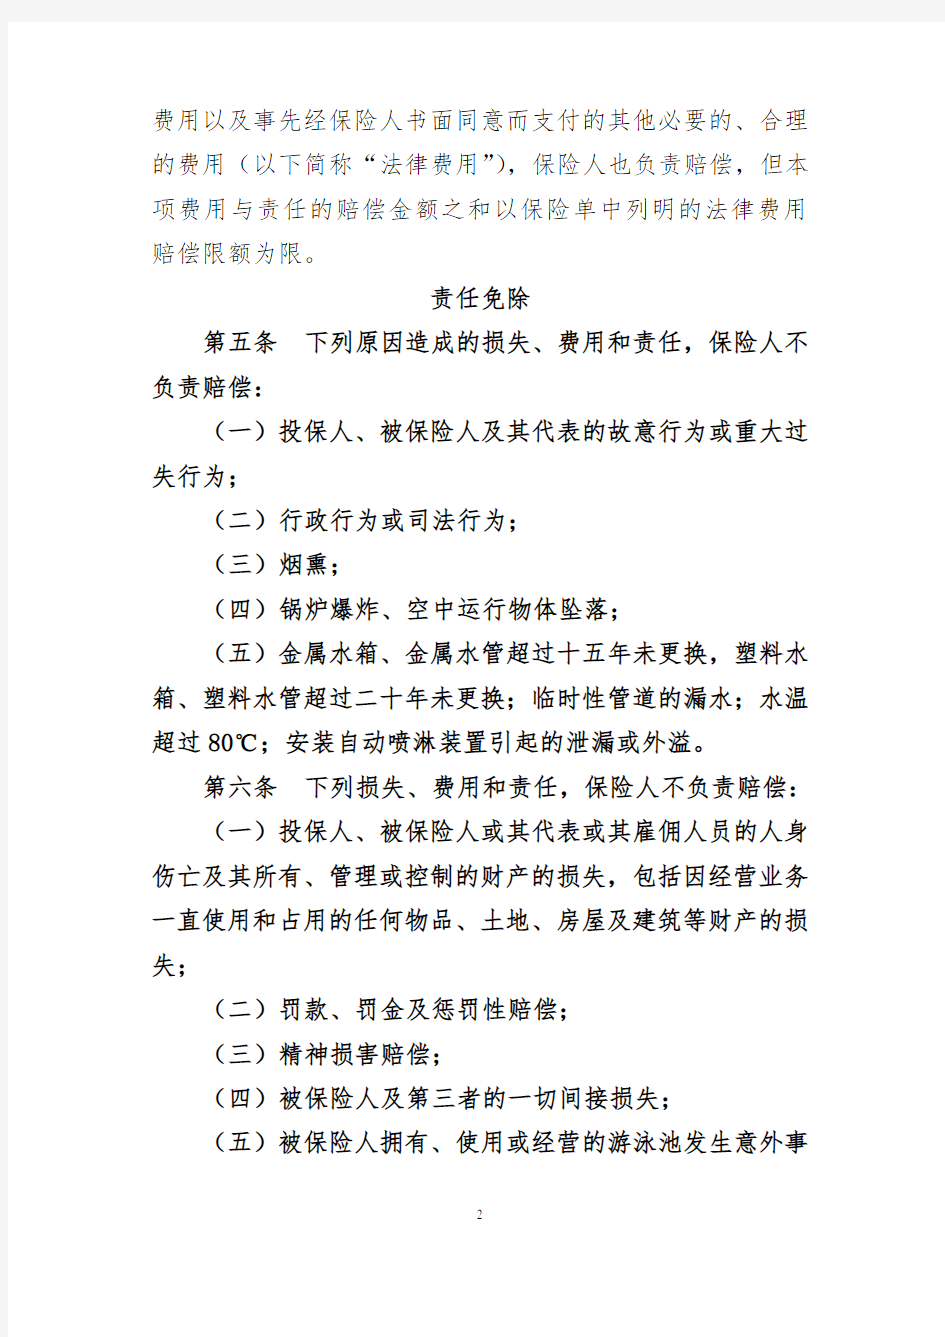 公众责任保险B条款-中国人寿财产保险股份有限公司